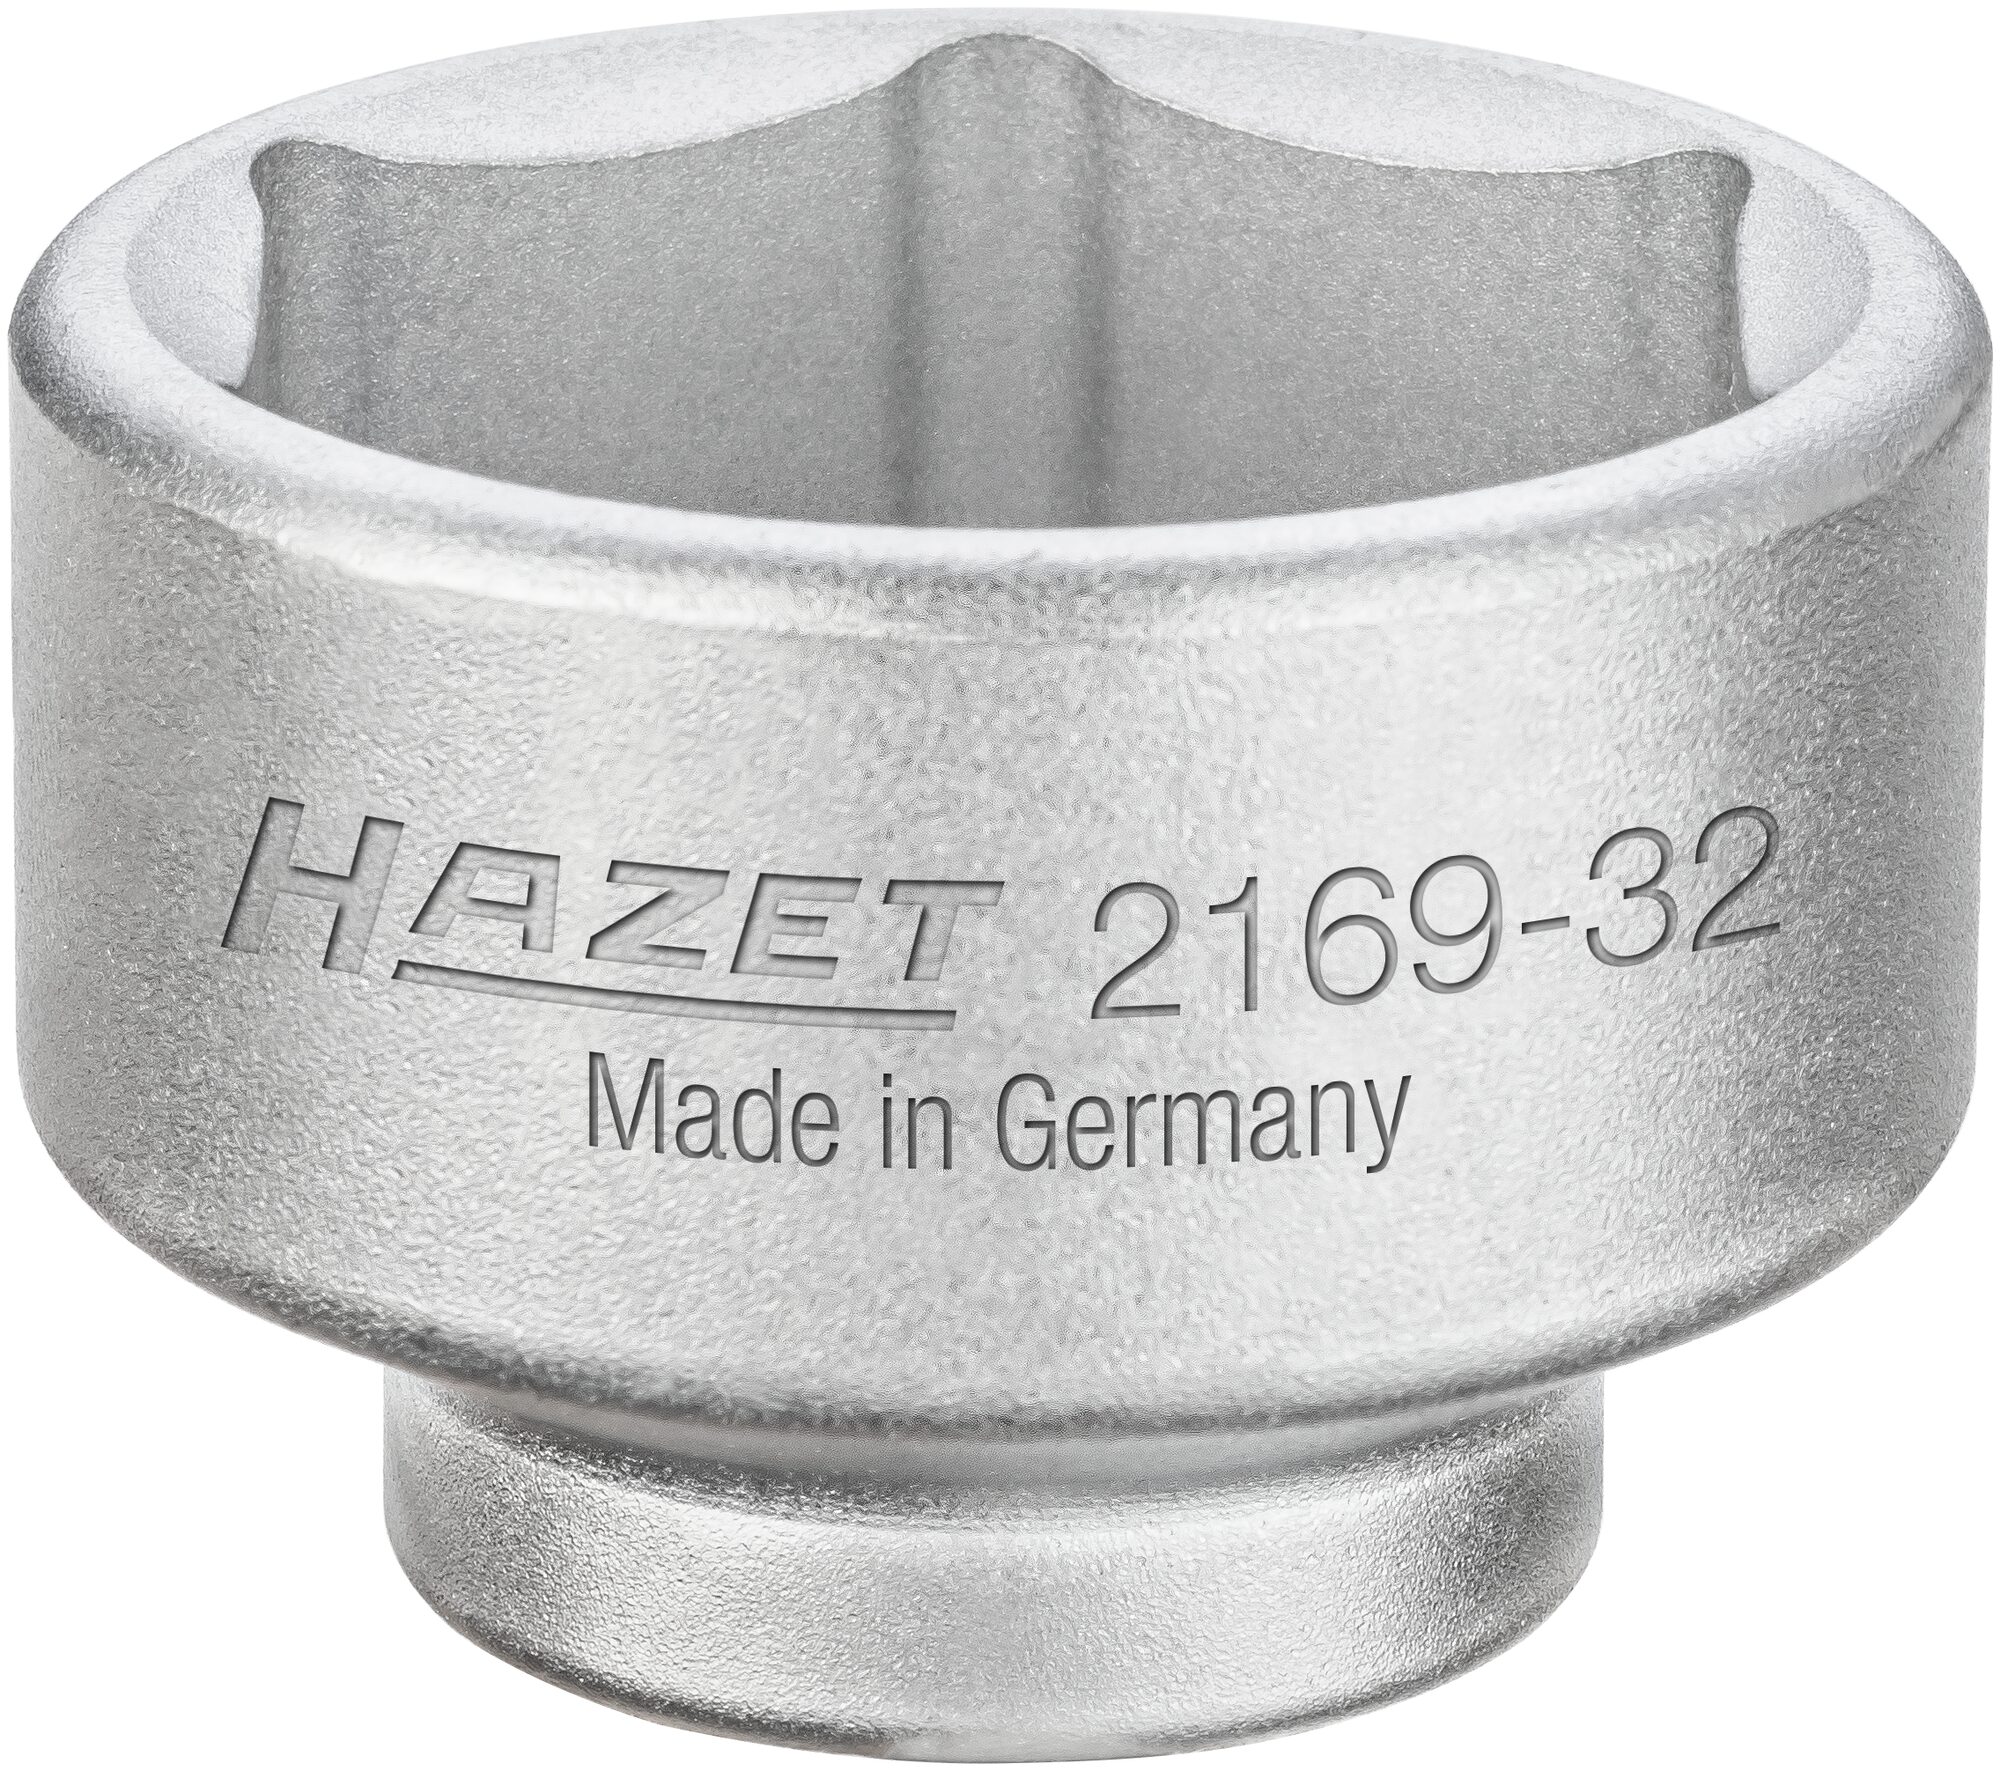 HAZET Ölfilter-Schlüssel 2169-32 · Vierkant hohl 10 mm (3/8 Zoll